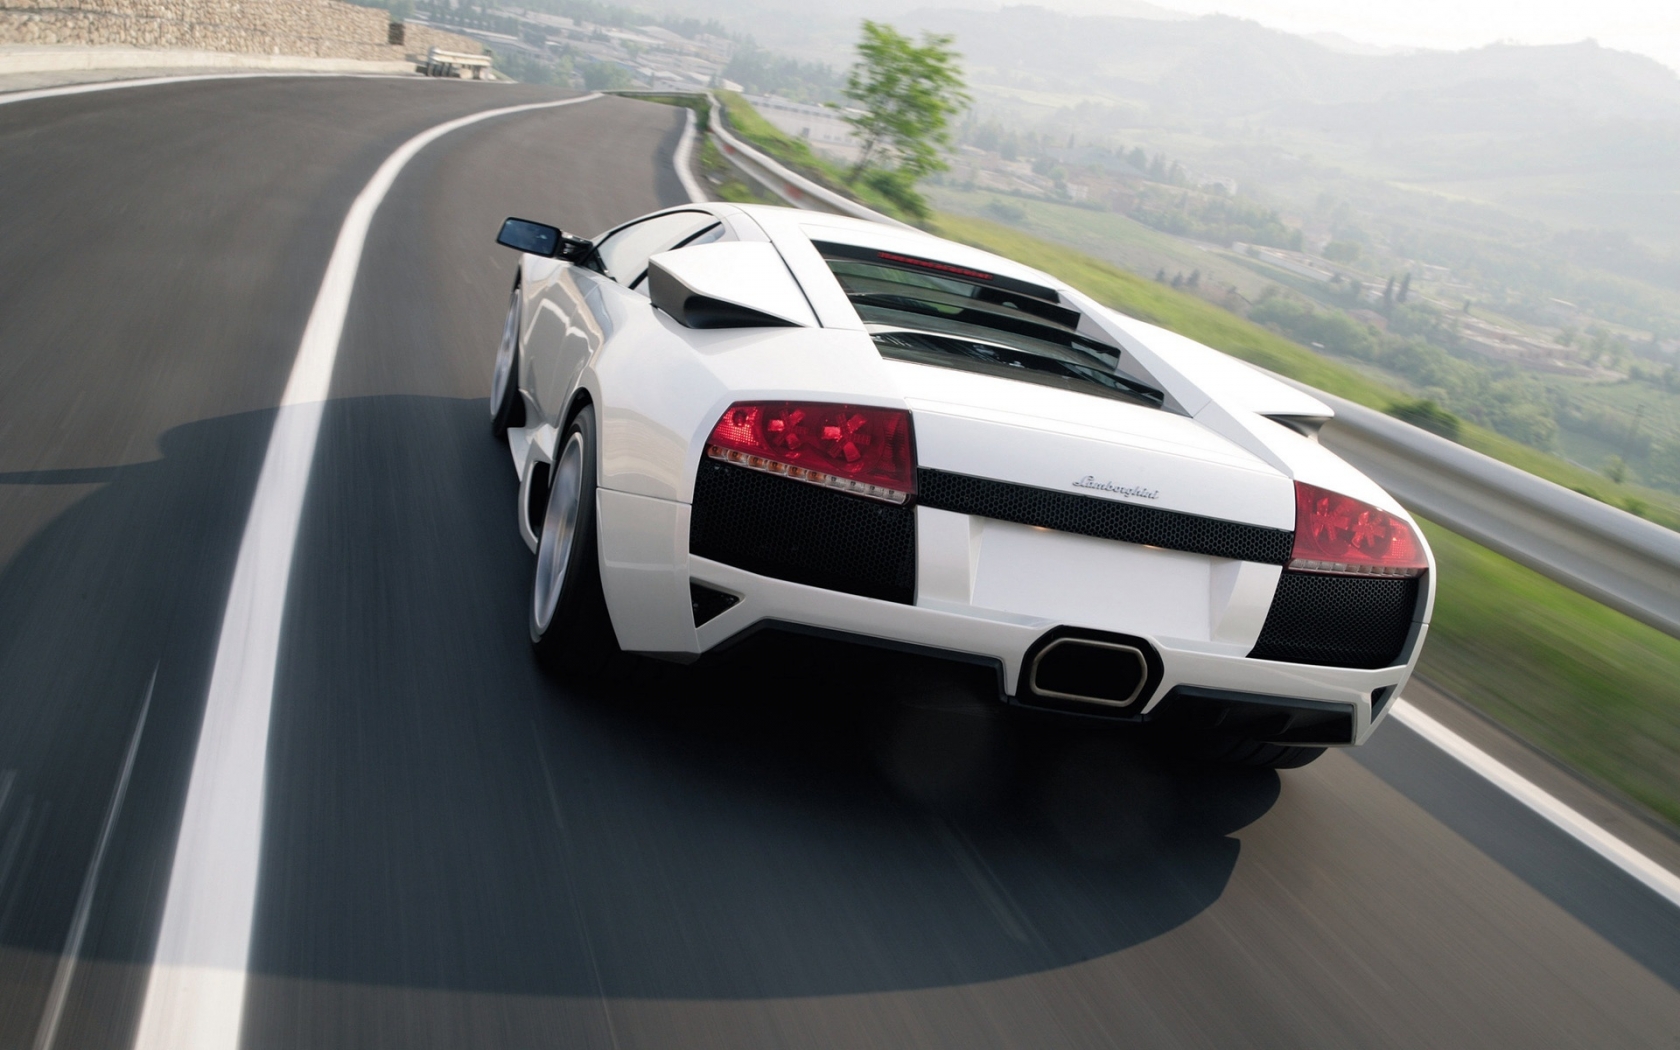 Lamborghini Murcielago LP640 2010 White for 1680 x 1050 widescreen resolution